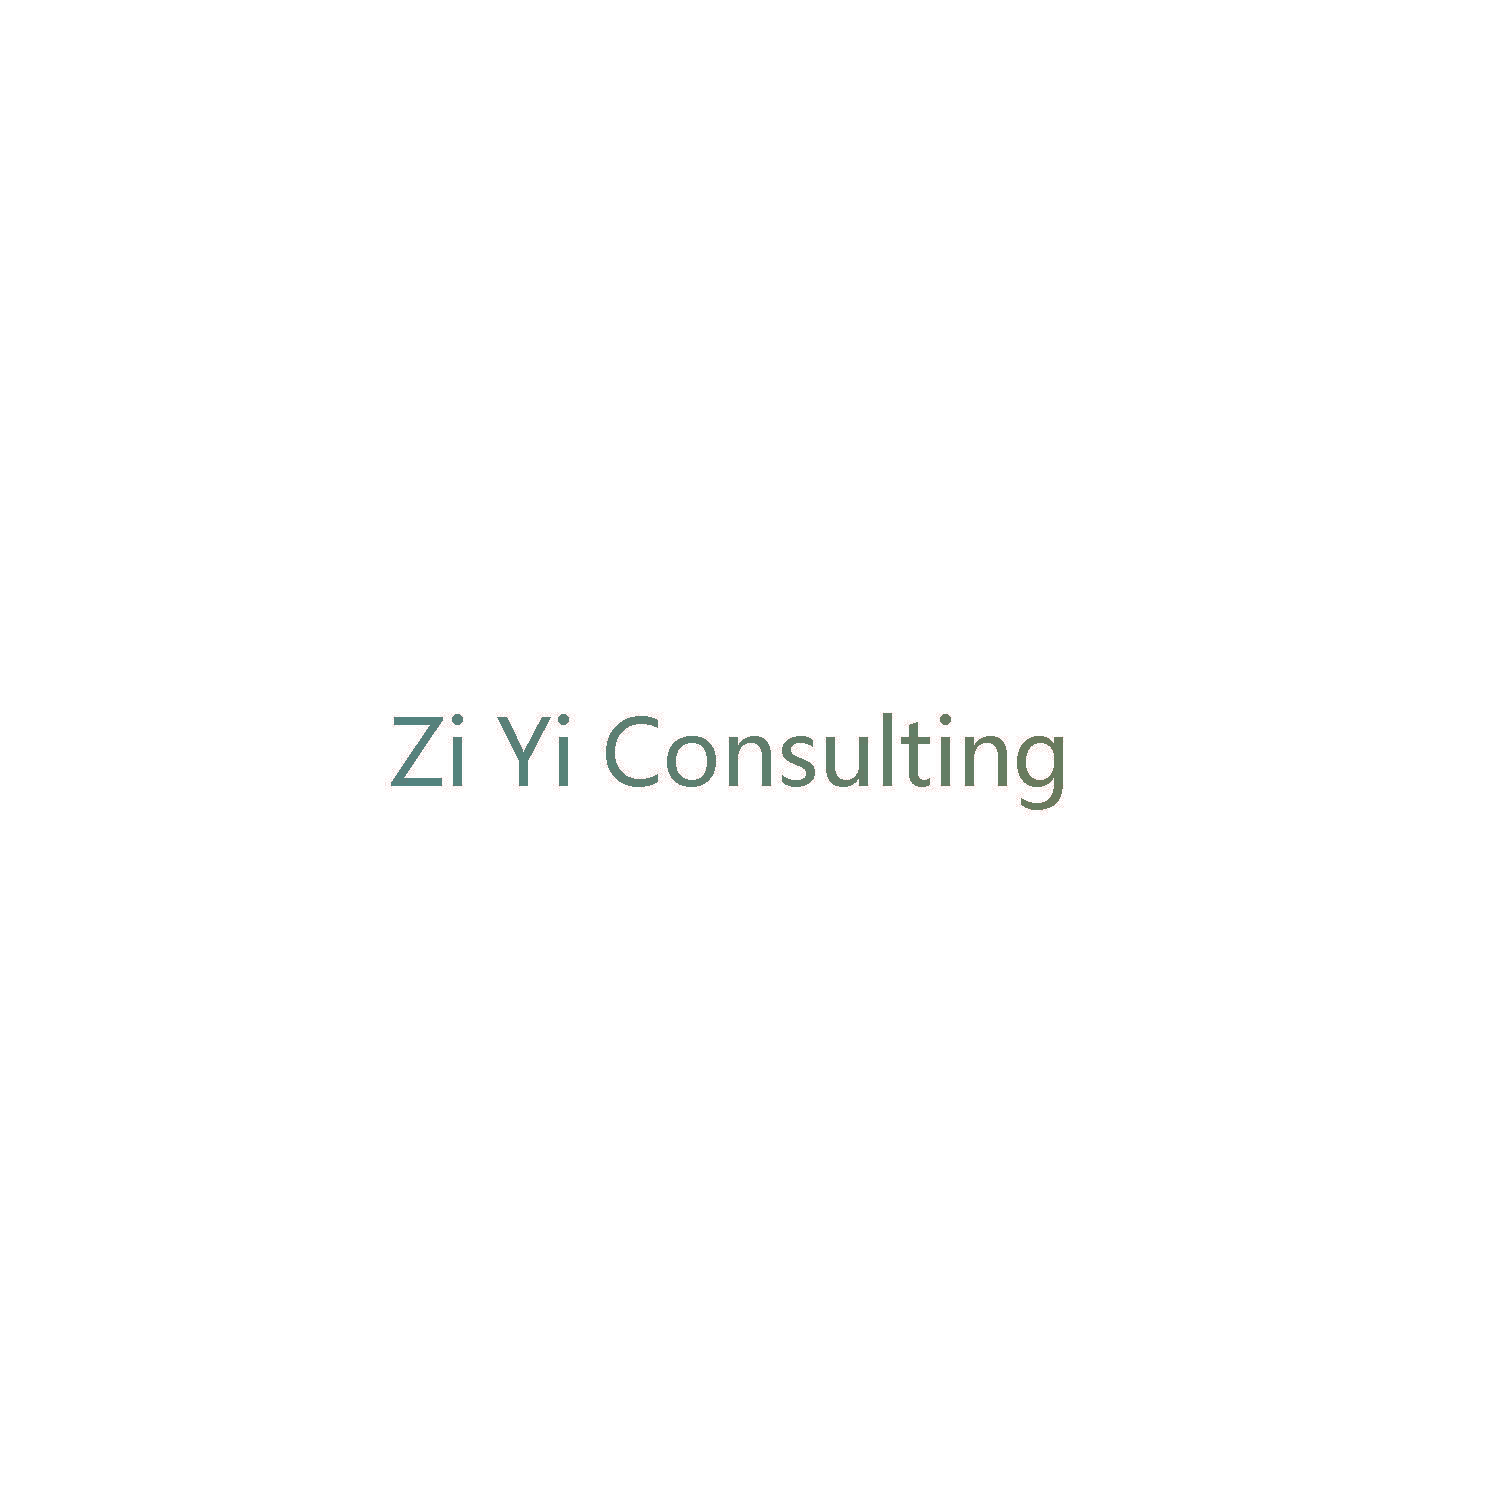 Zi Yi Consulting